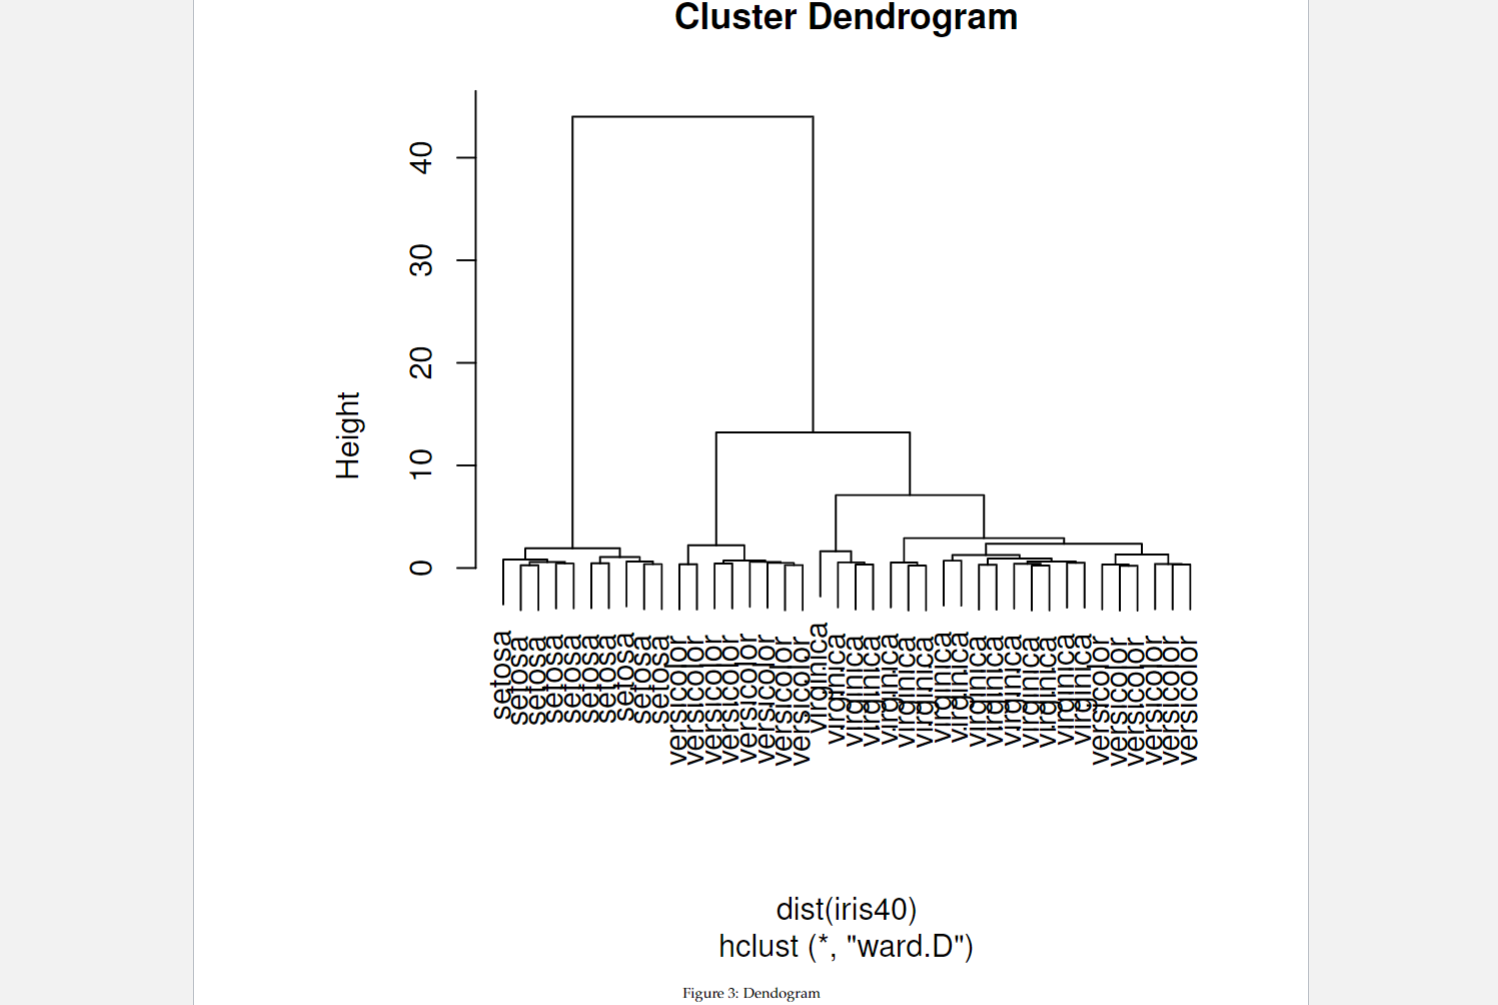 C D C D C D C D C D CD. Figure 3: Dendogram hclust (*, 